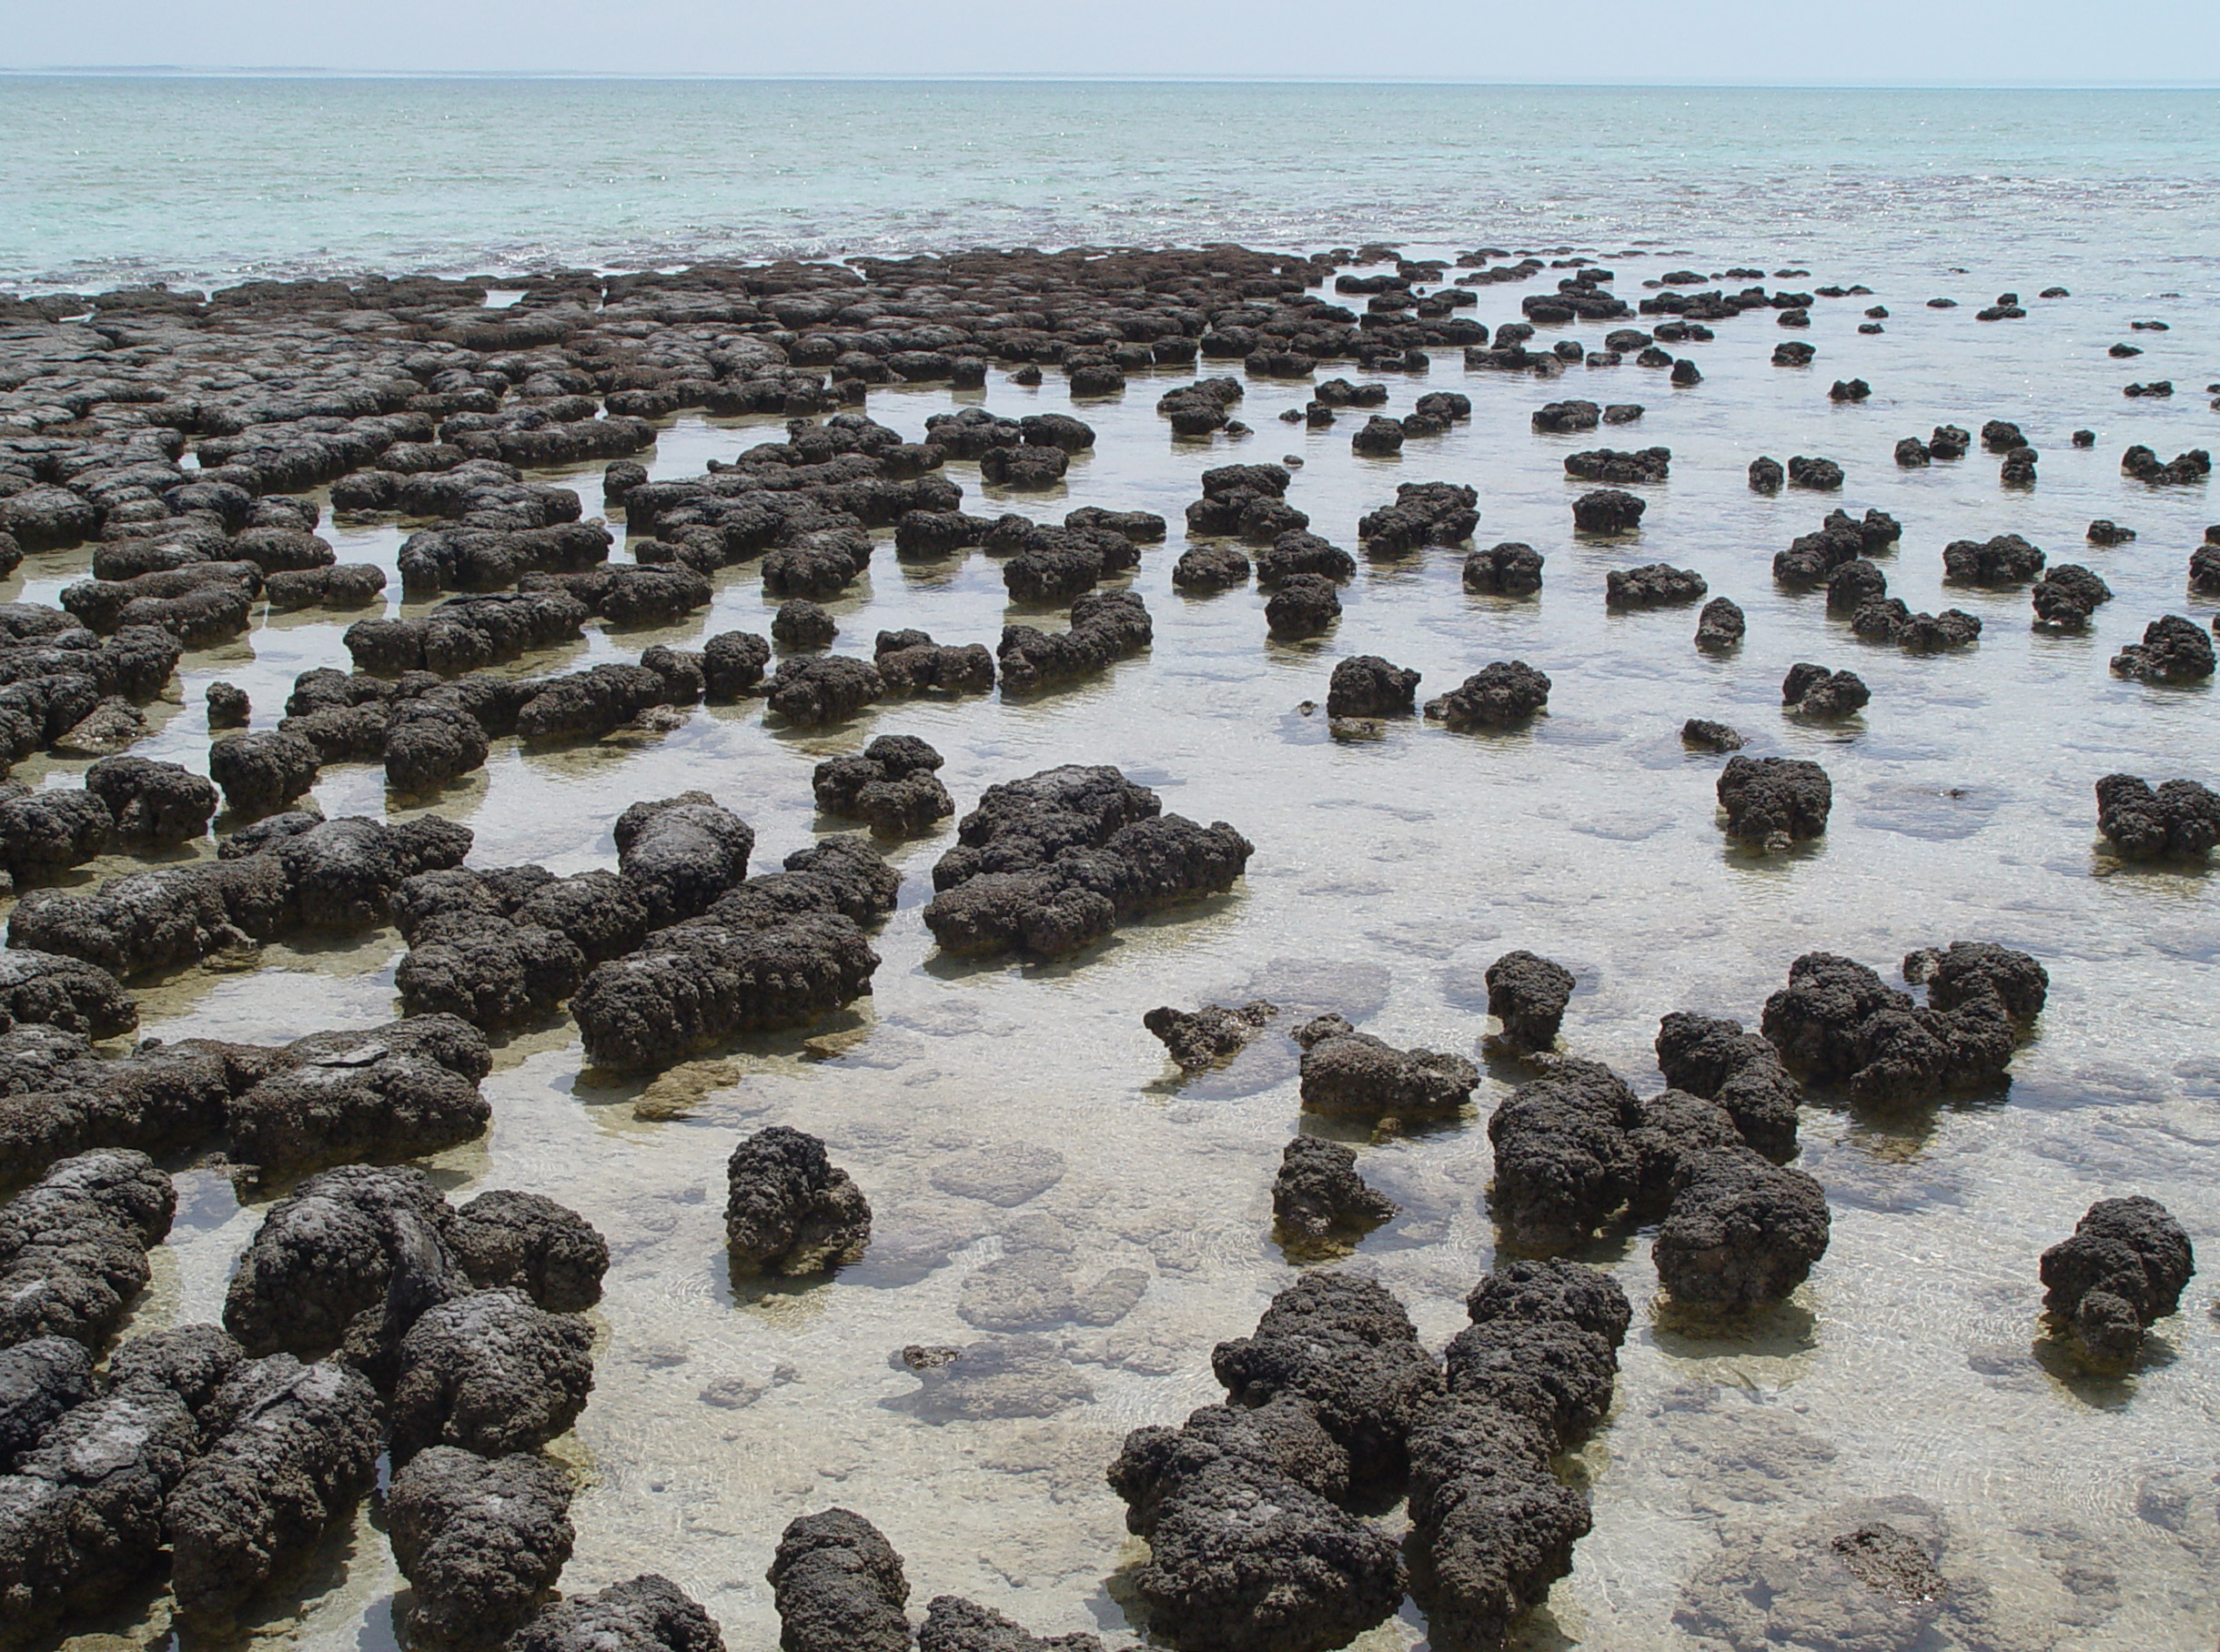 ustralskĂ© stromatolity, pozĹŻstatek na poÄŤĂˇtek Ĺľivota na Zemi jsou ze stejnĂ© doby, jako zkoumanĂ© bazalty s obrovskĂ˝mi bublinami plynu. (Kredit: Paul Harrison, CC BY-SA 3.0 )